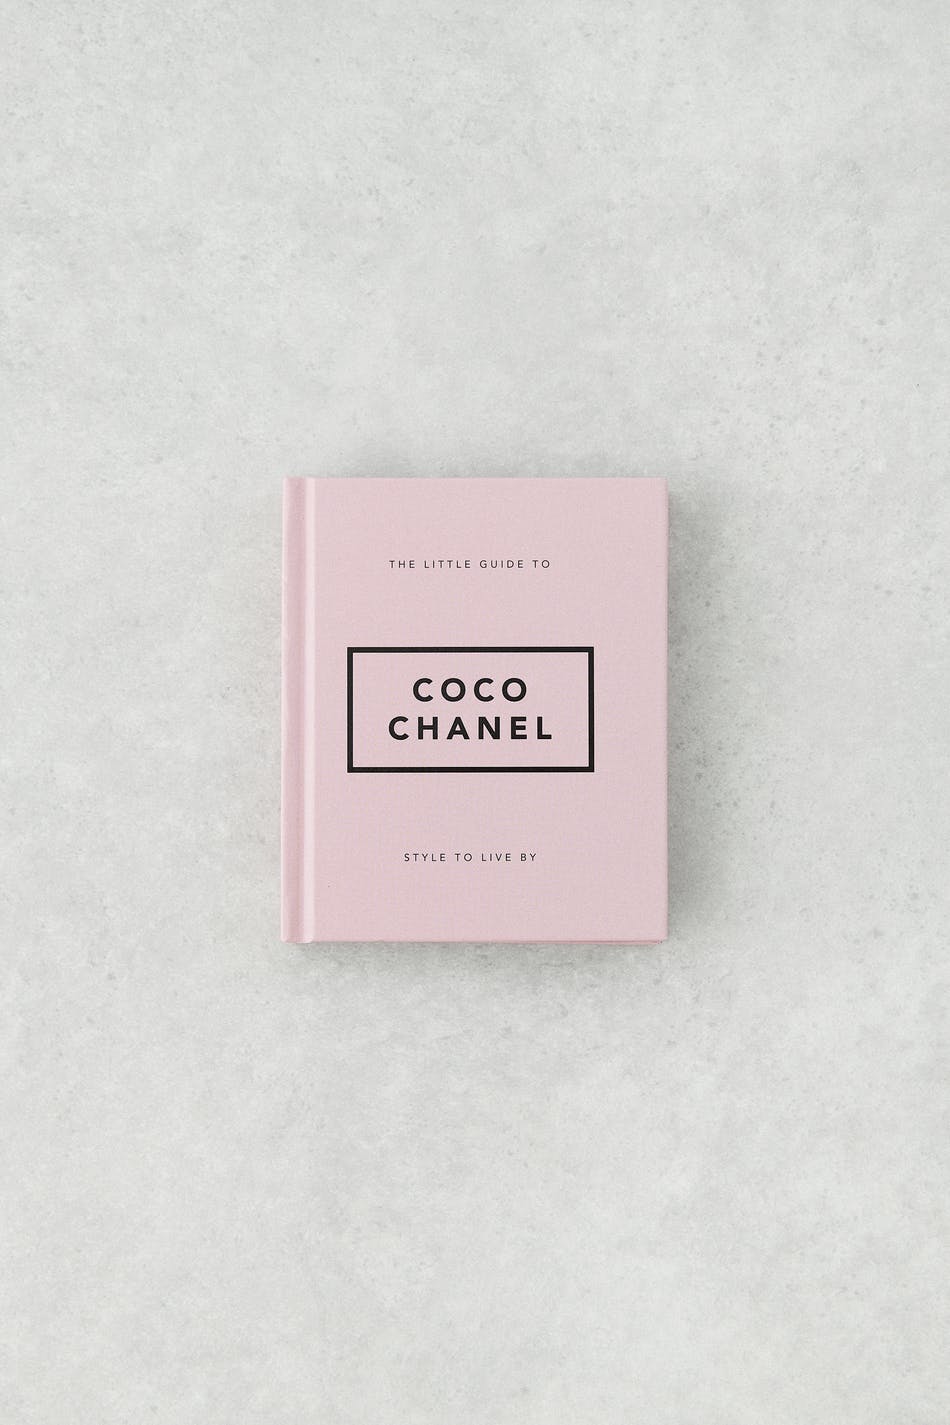 Coco chanel book - Rosa - Gina Tricot